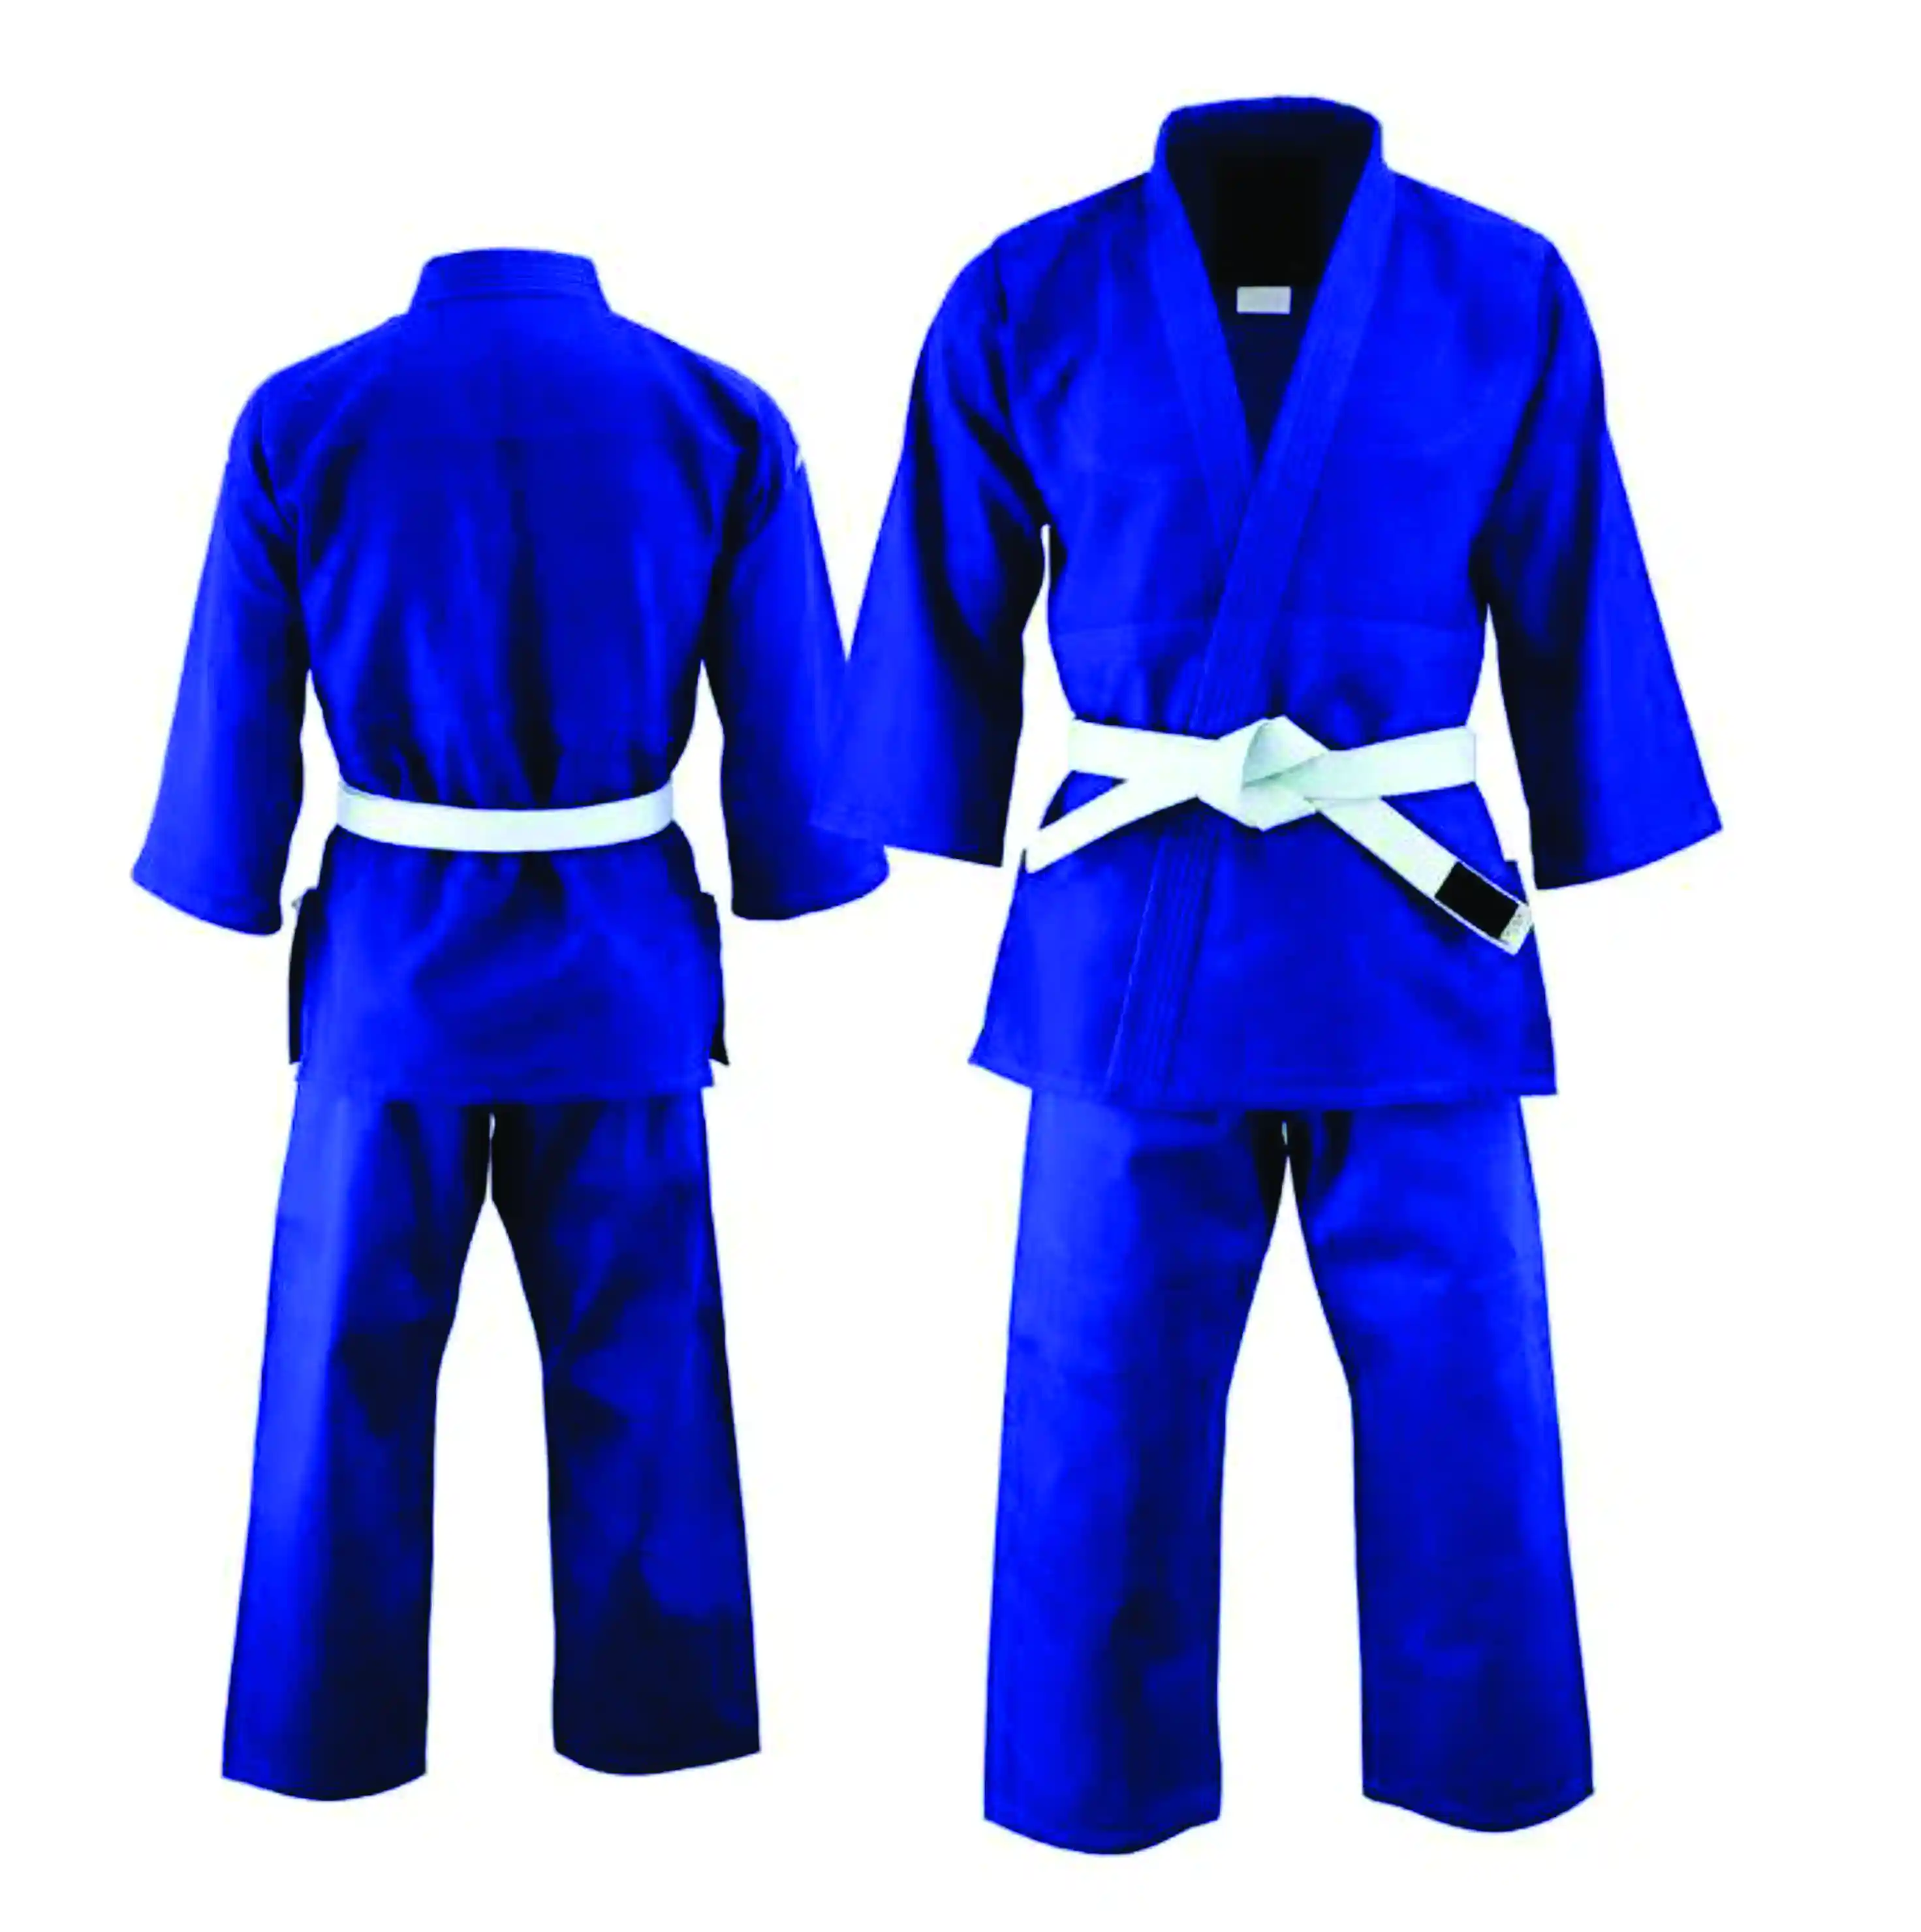 Uniforme de Karate deportivo para adultos Trajes de Karate Gi de estudiante ligero Uniforme de artes marciales con cinturón